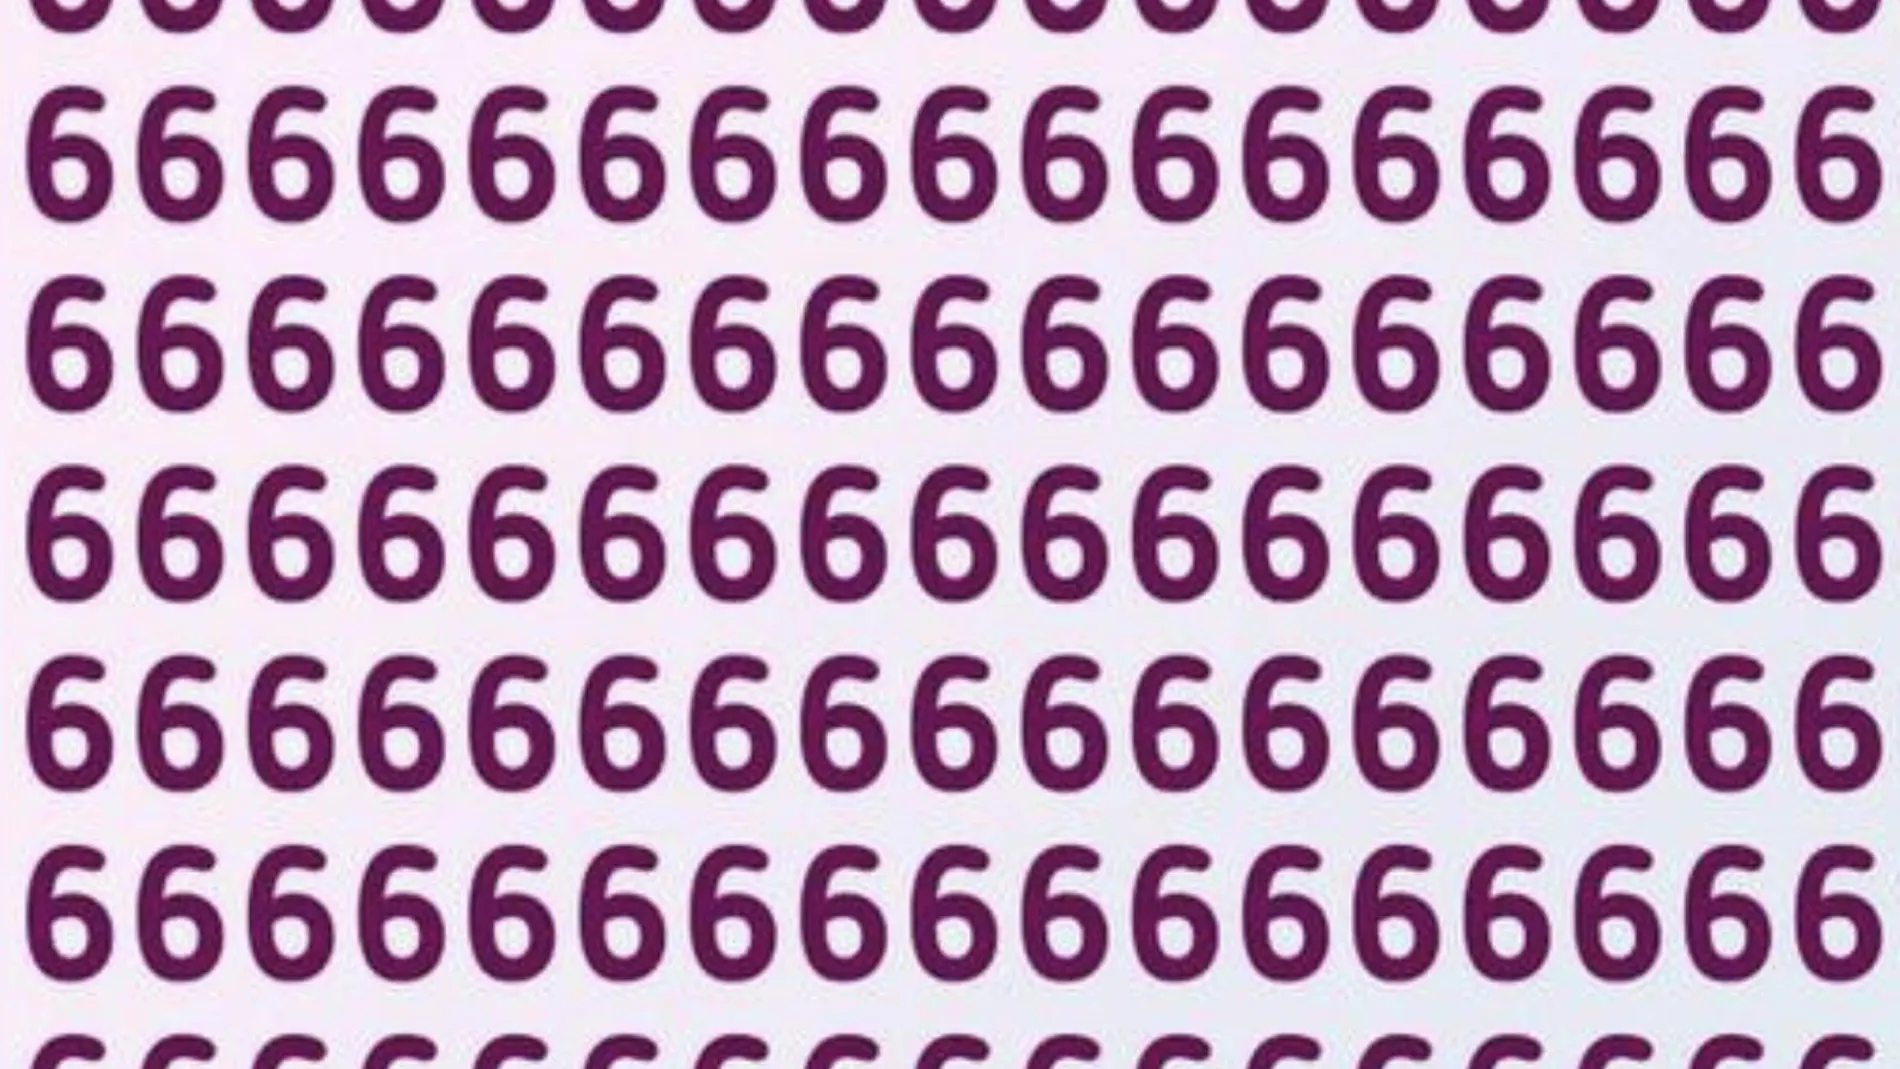 Reto viral: ¿eres capaz de localizar el 9 escondido entre tantos 6?